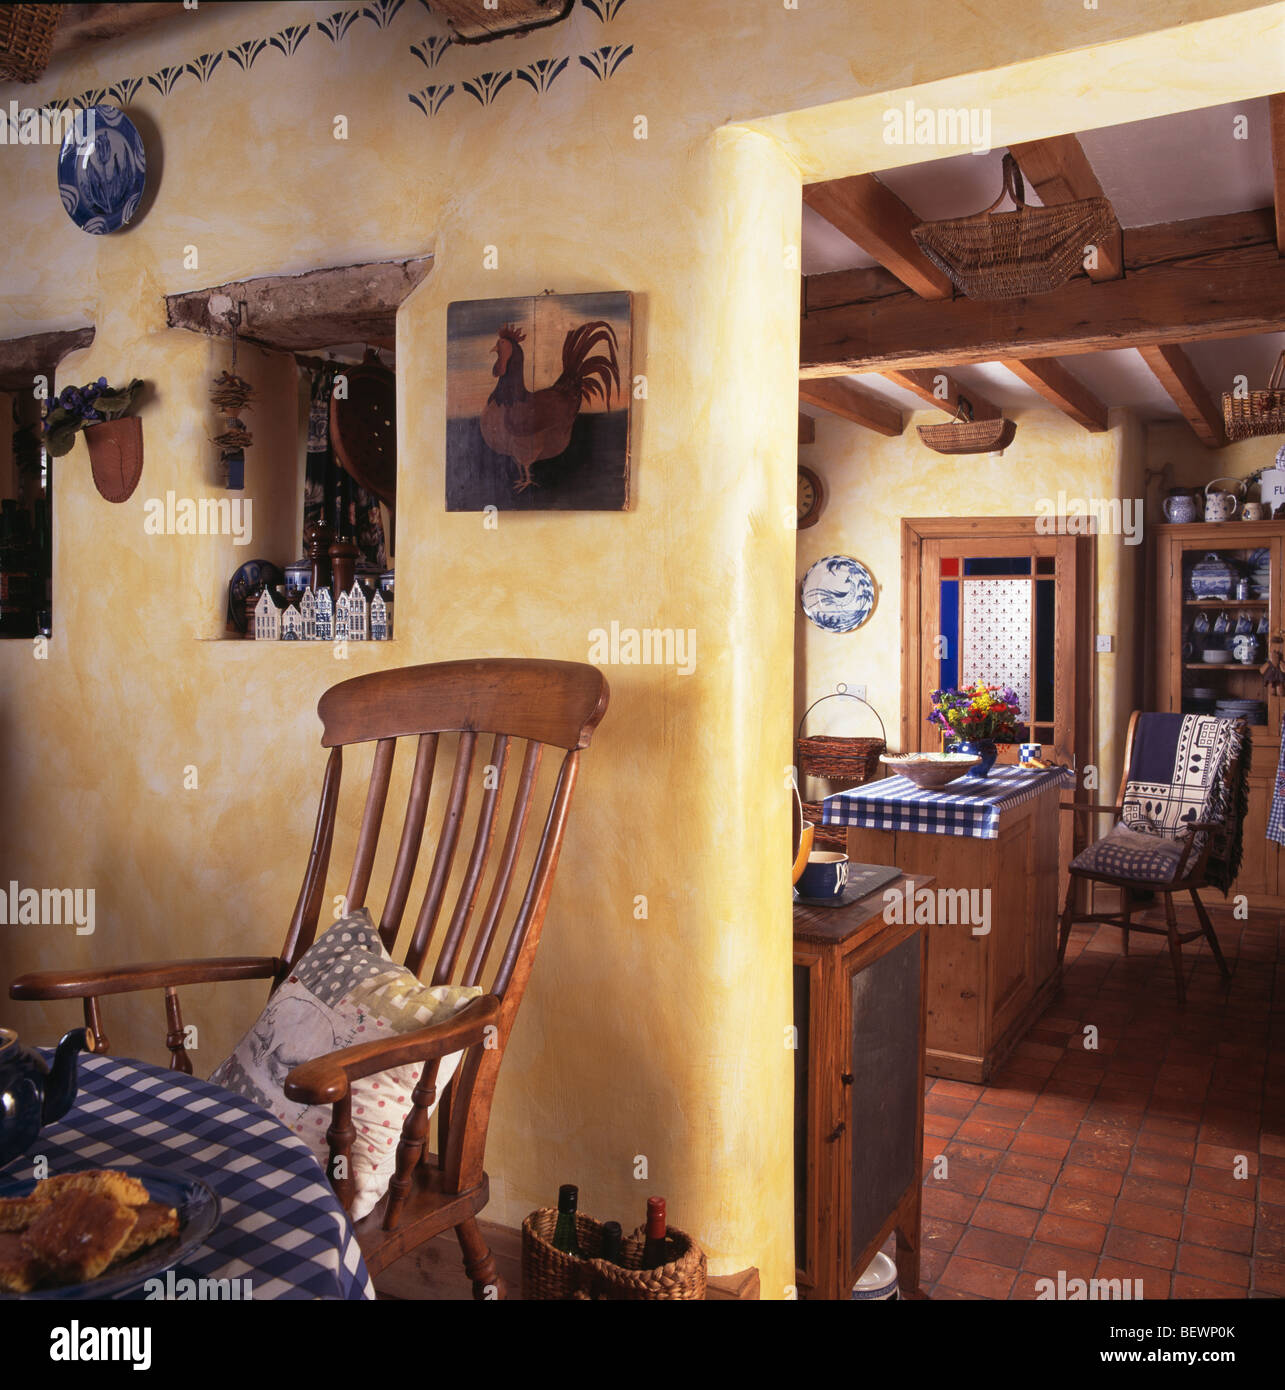 Effet-éponge peint des murs jaunes en cottage salle à manger avec chaise à côté de la vieille porte de cuisine Banque D'Images